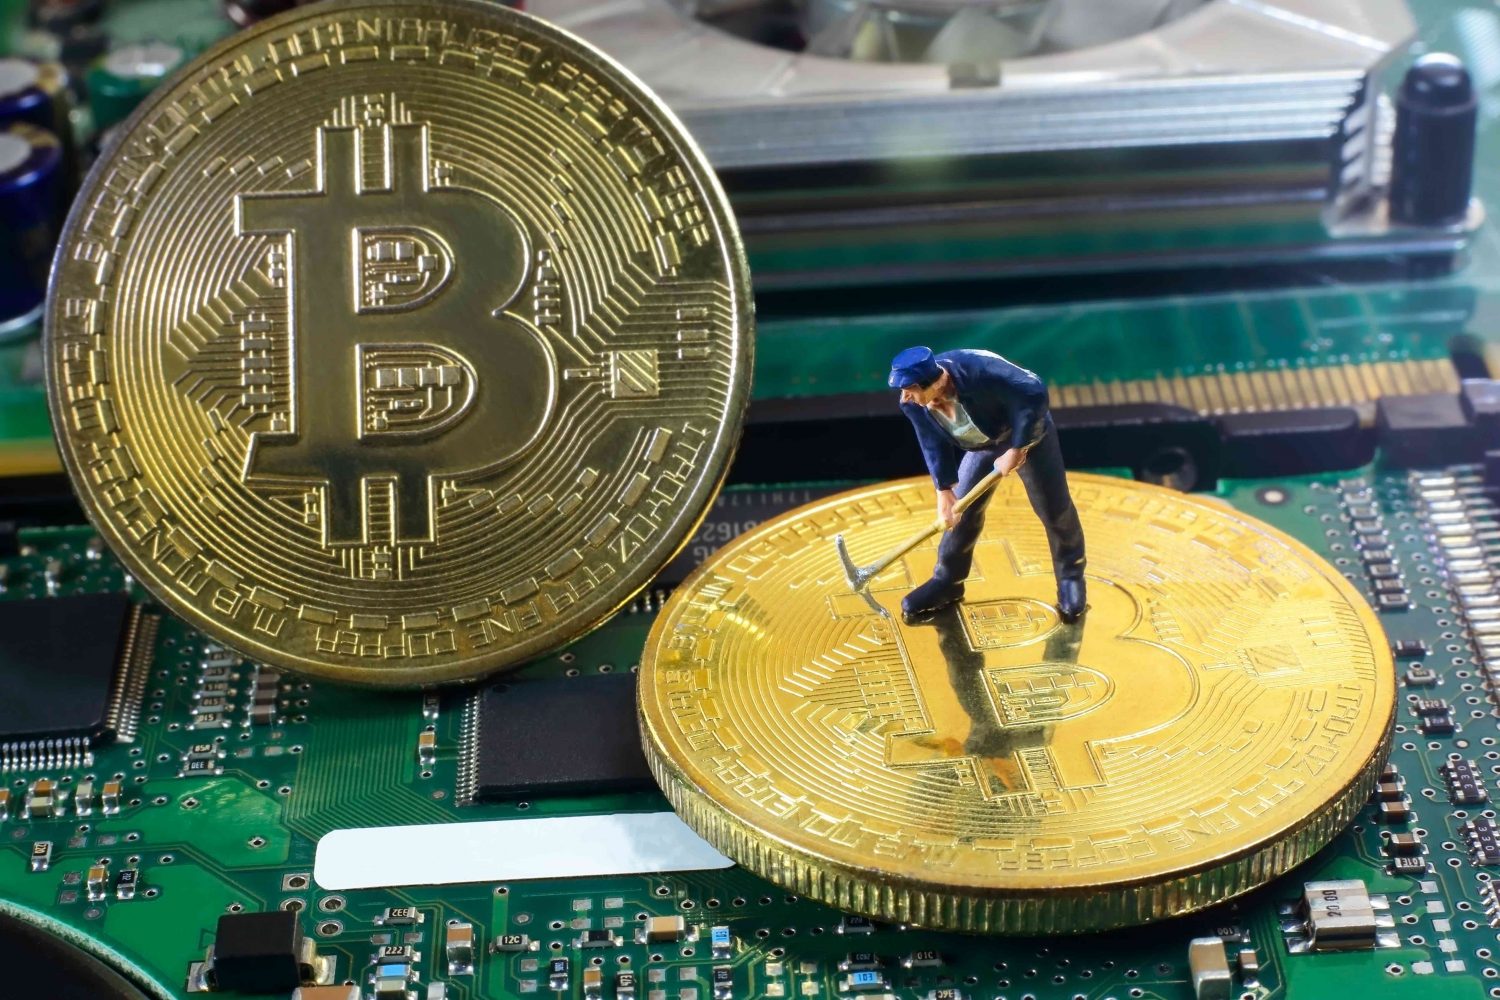 Bitcoin mining bitcoin marketplace crypto currency bitcoin to usd 2015